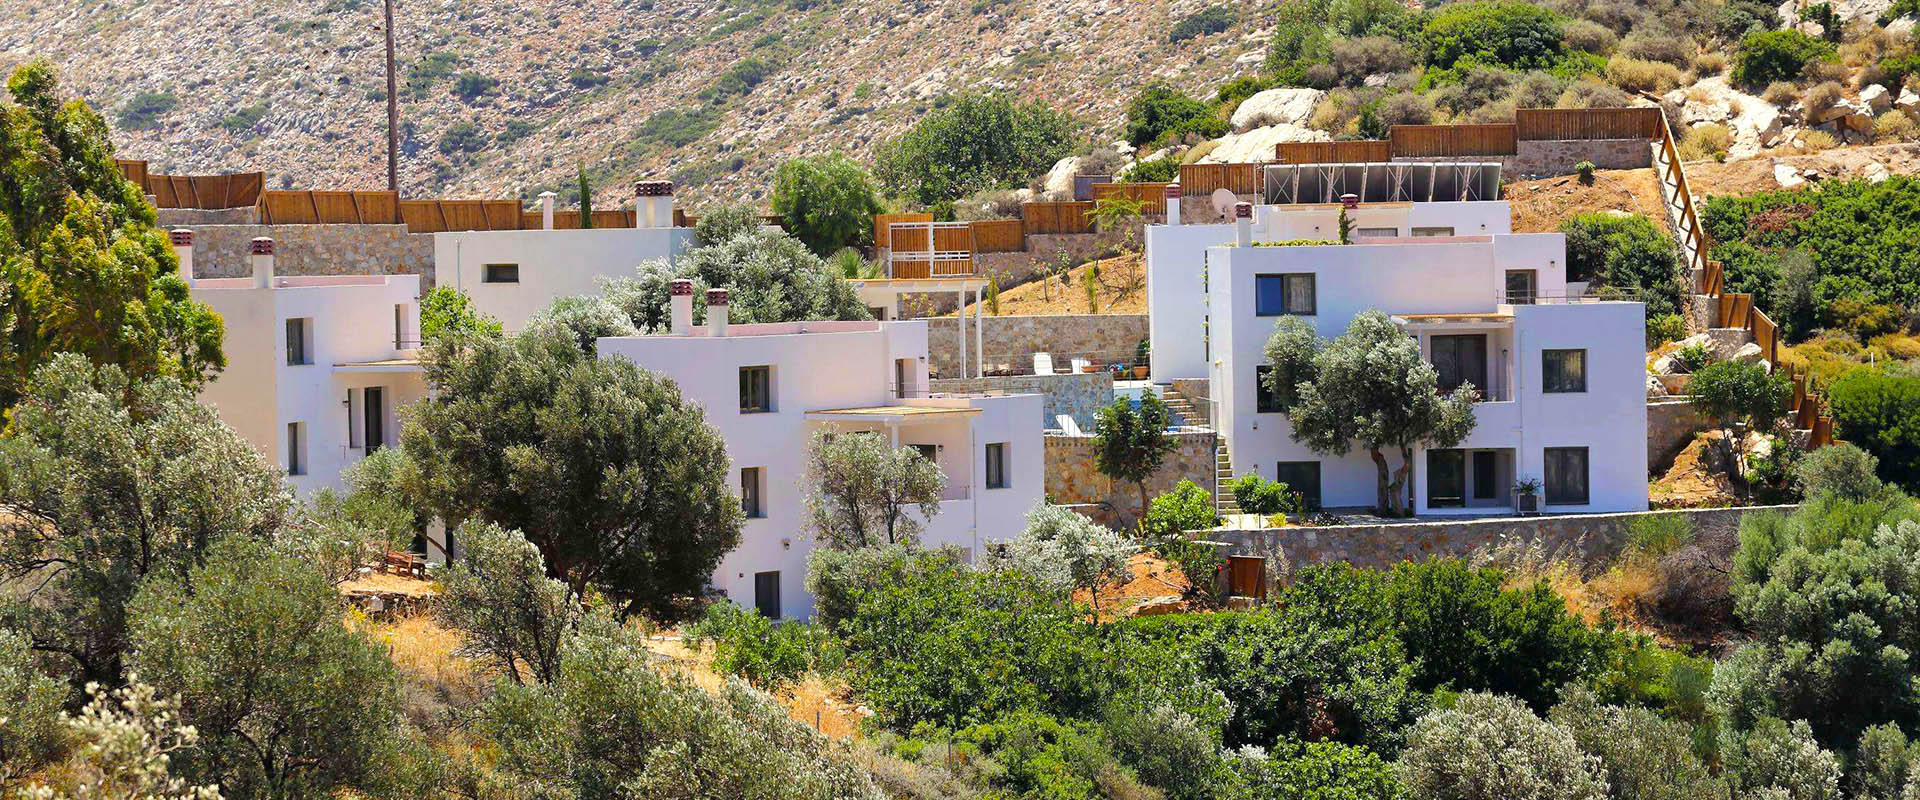 Διακοπές οικοτουρισμού στην Κρήτη: φιλικές προς το περιβάλλον βίλες εξοχικών σπιτιών